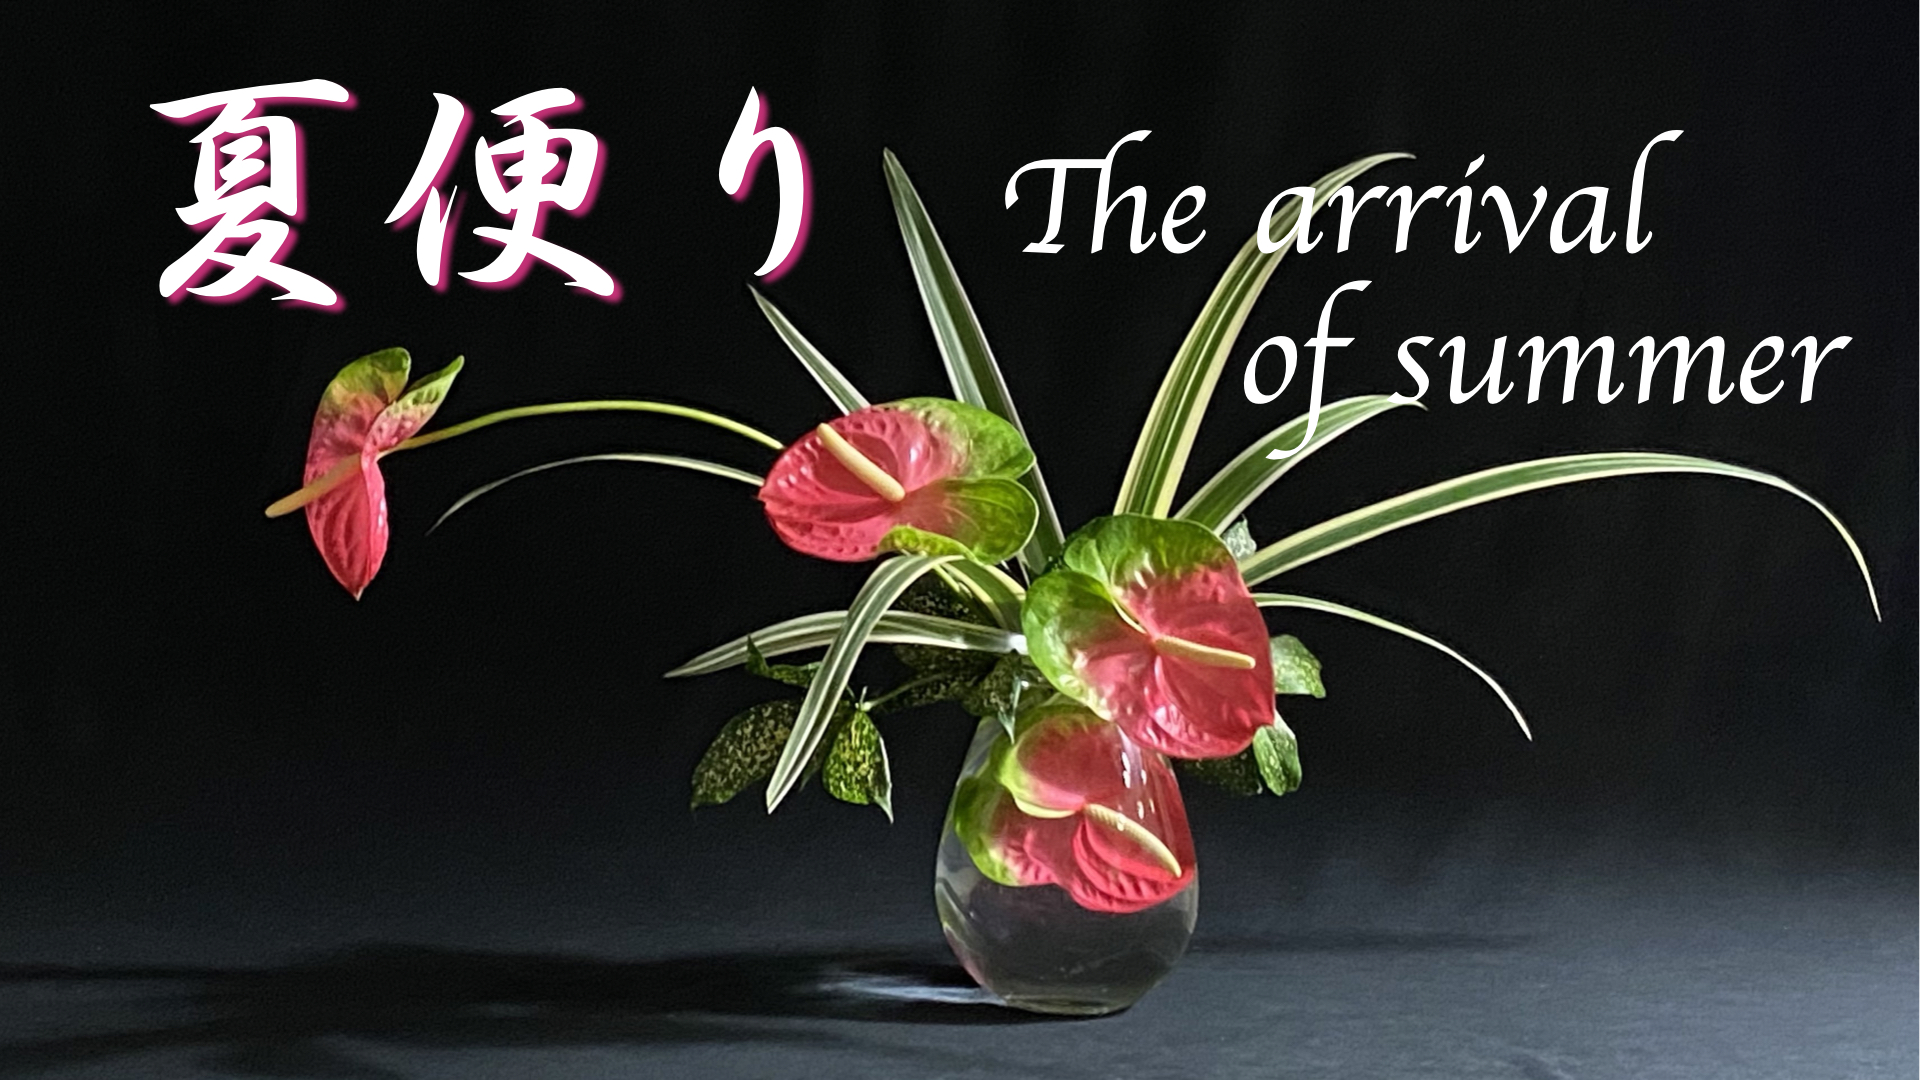 生け花 自由花の表現法の１つ 水中花 を用いて夏の訪れを涼しげに表現してみました Ikebana いけばな 古流かたばみ会